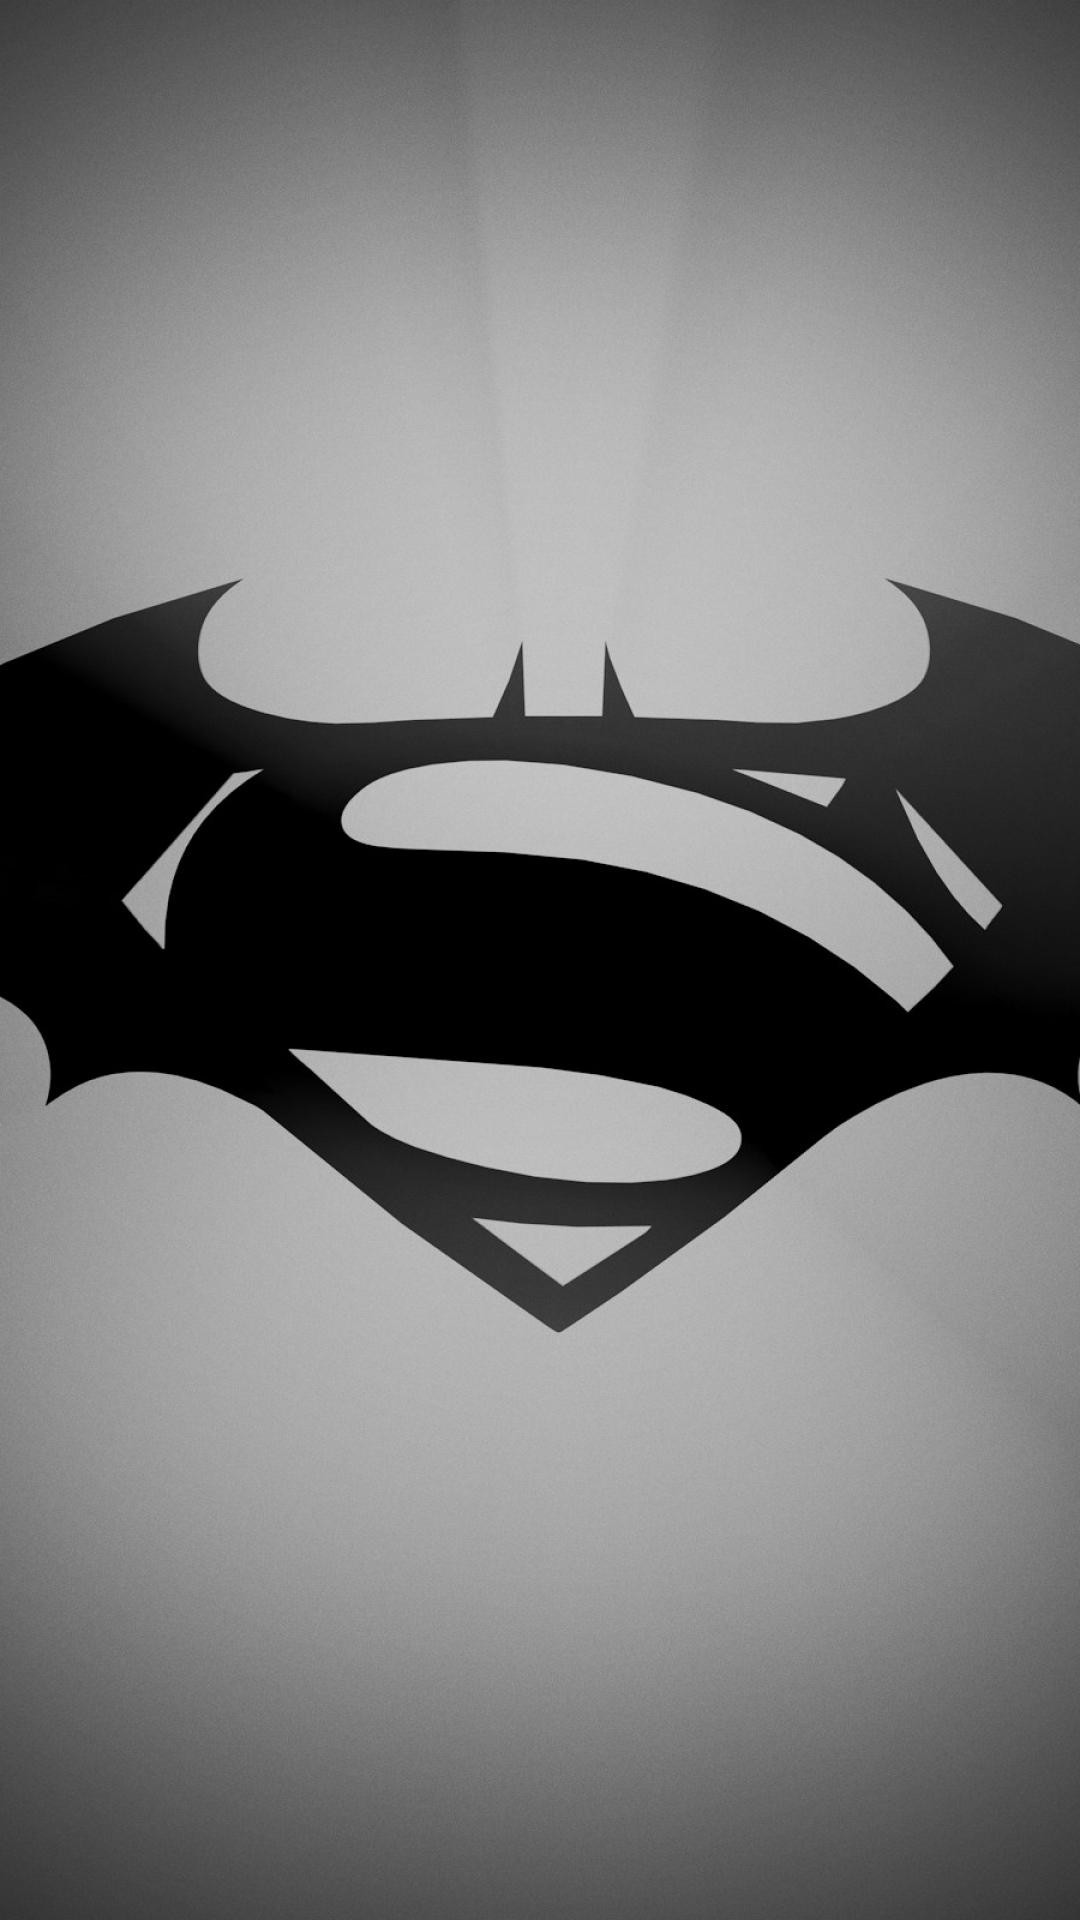 1080x1920 Batman vs superman logo wallpaper | (84180)